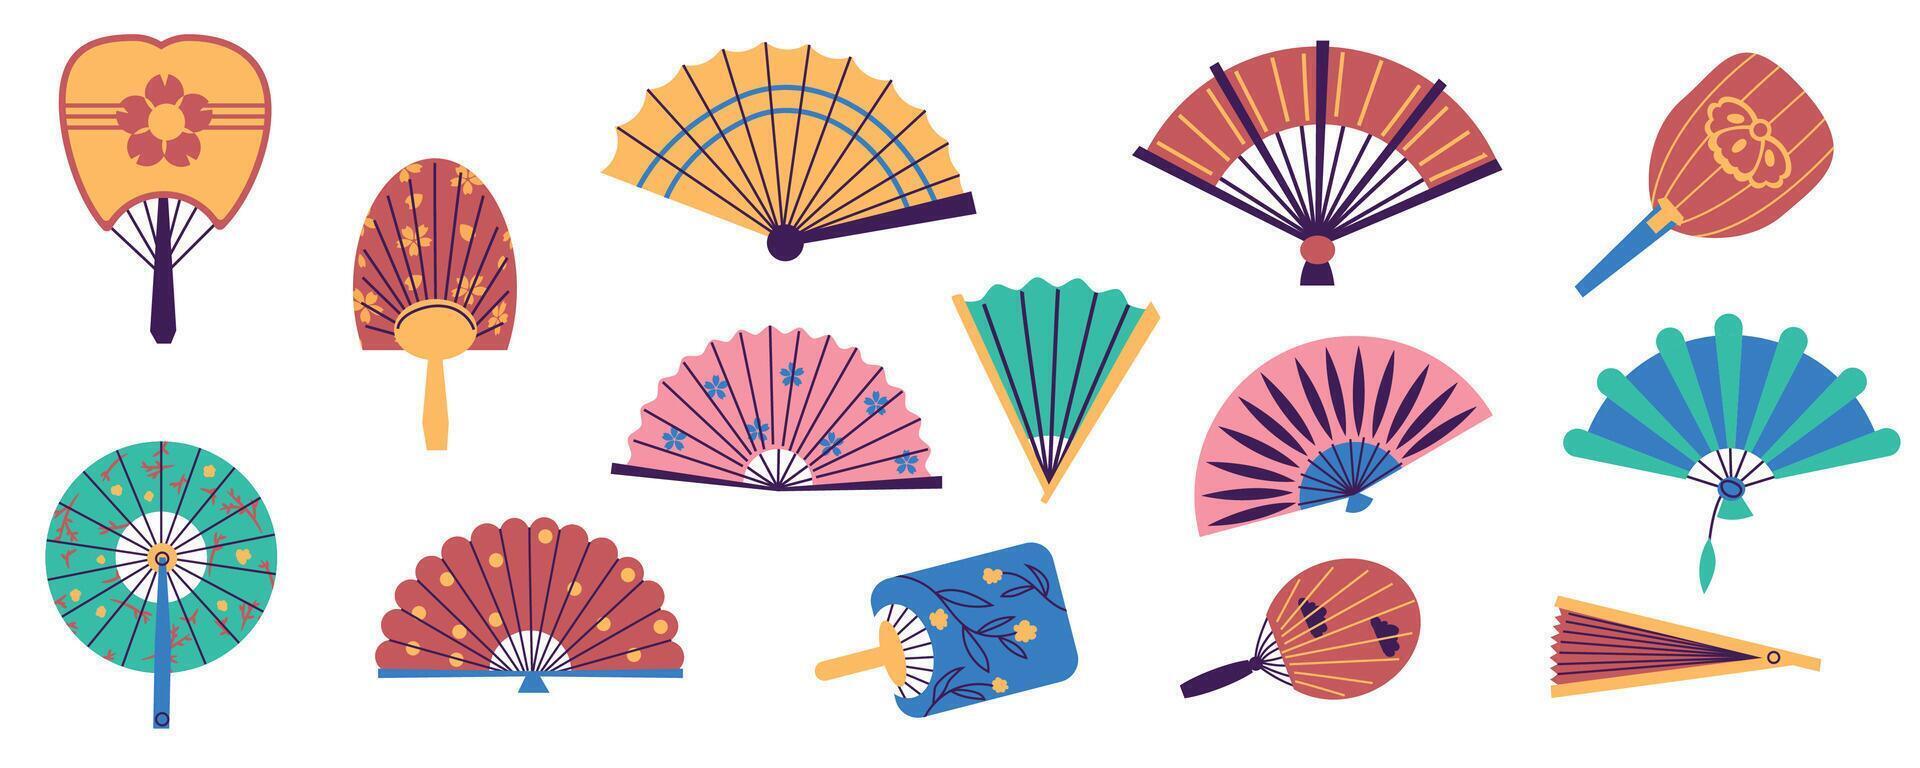 papper hand fans. traditionell orientalisk hopfällbar fans, hand vind Tillbehör platt stil annorlunda Färg. vektor kinesisk japansk asiatisk fläktar uppsättning